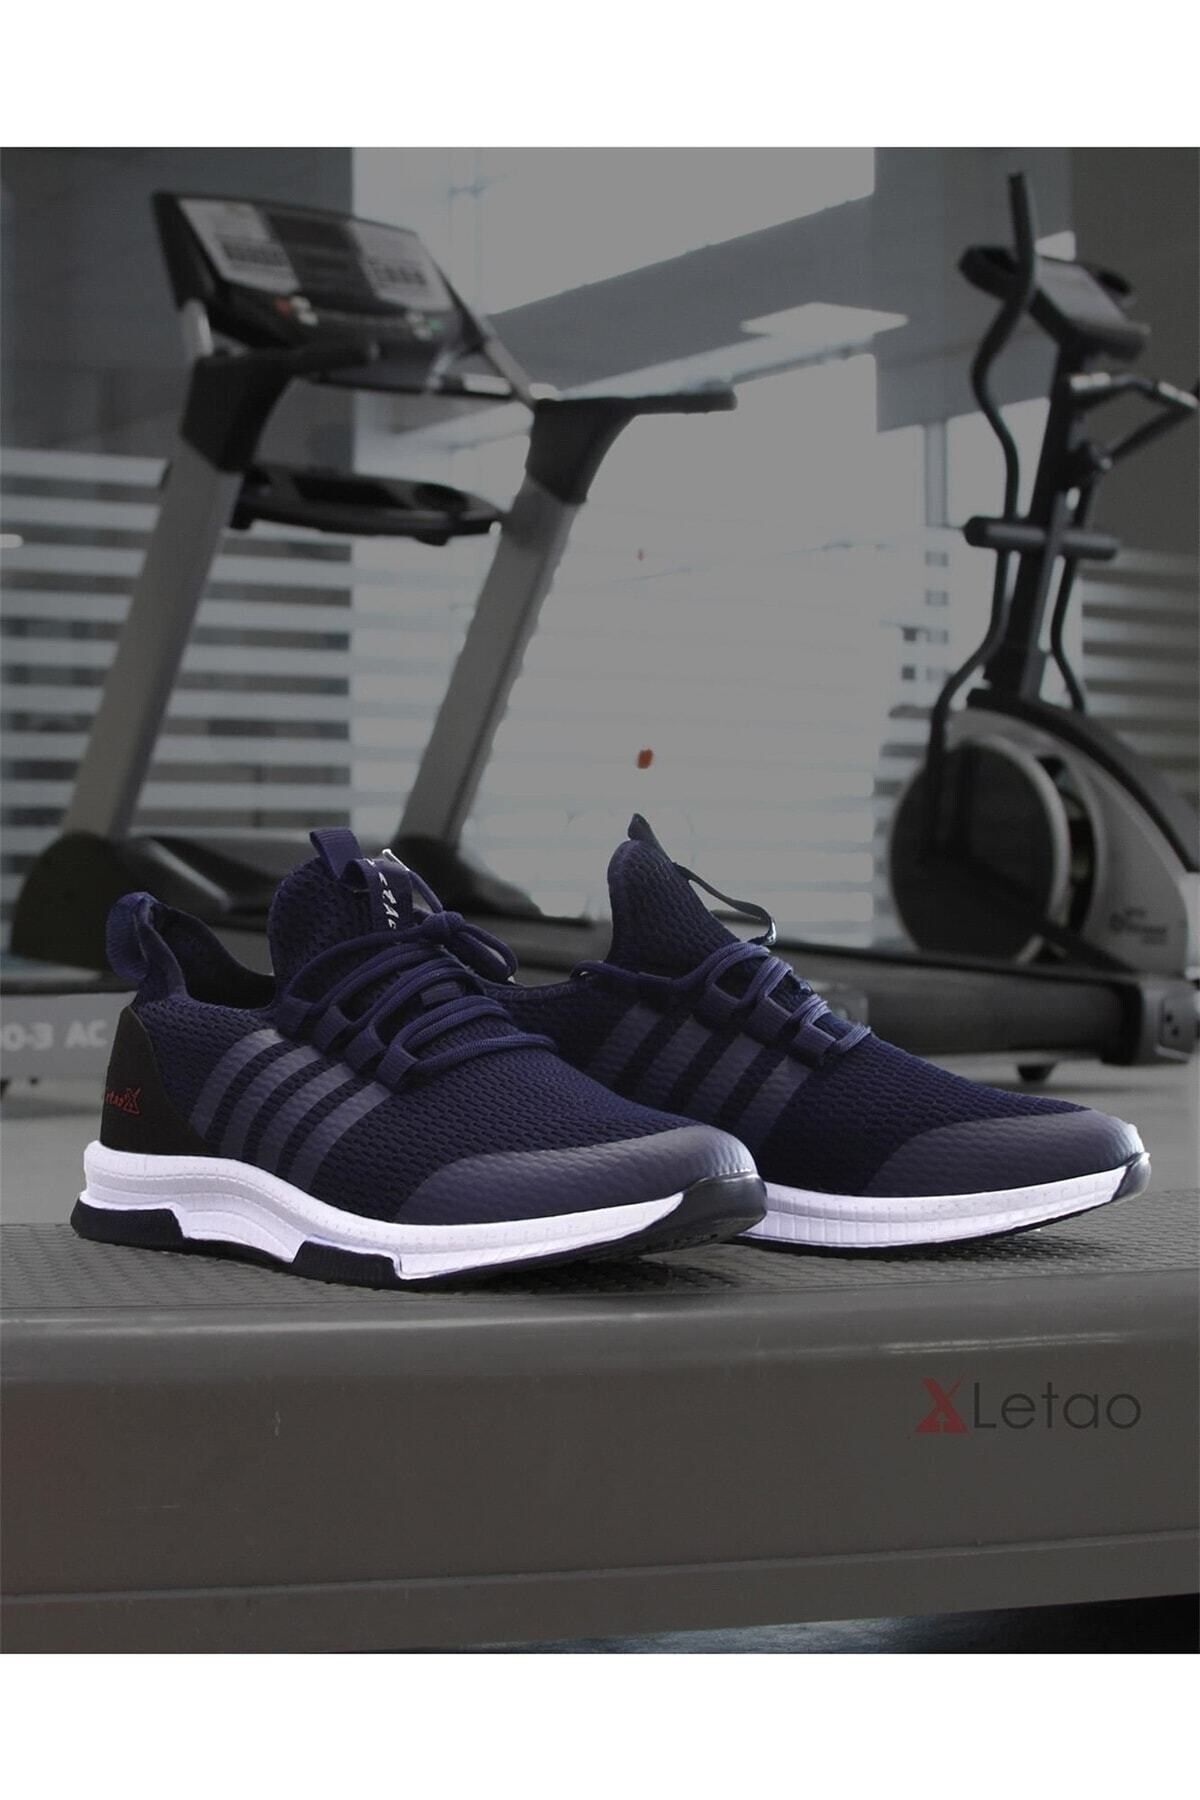 LETAO Action Hafif Günlük Unisex Spor Yürüyüş Sneaker Ayakkabı